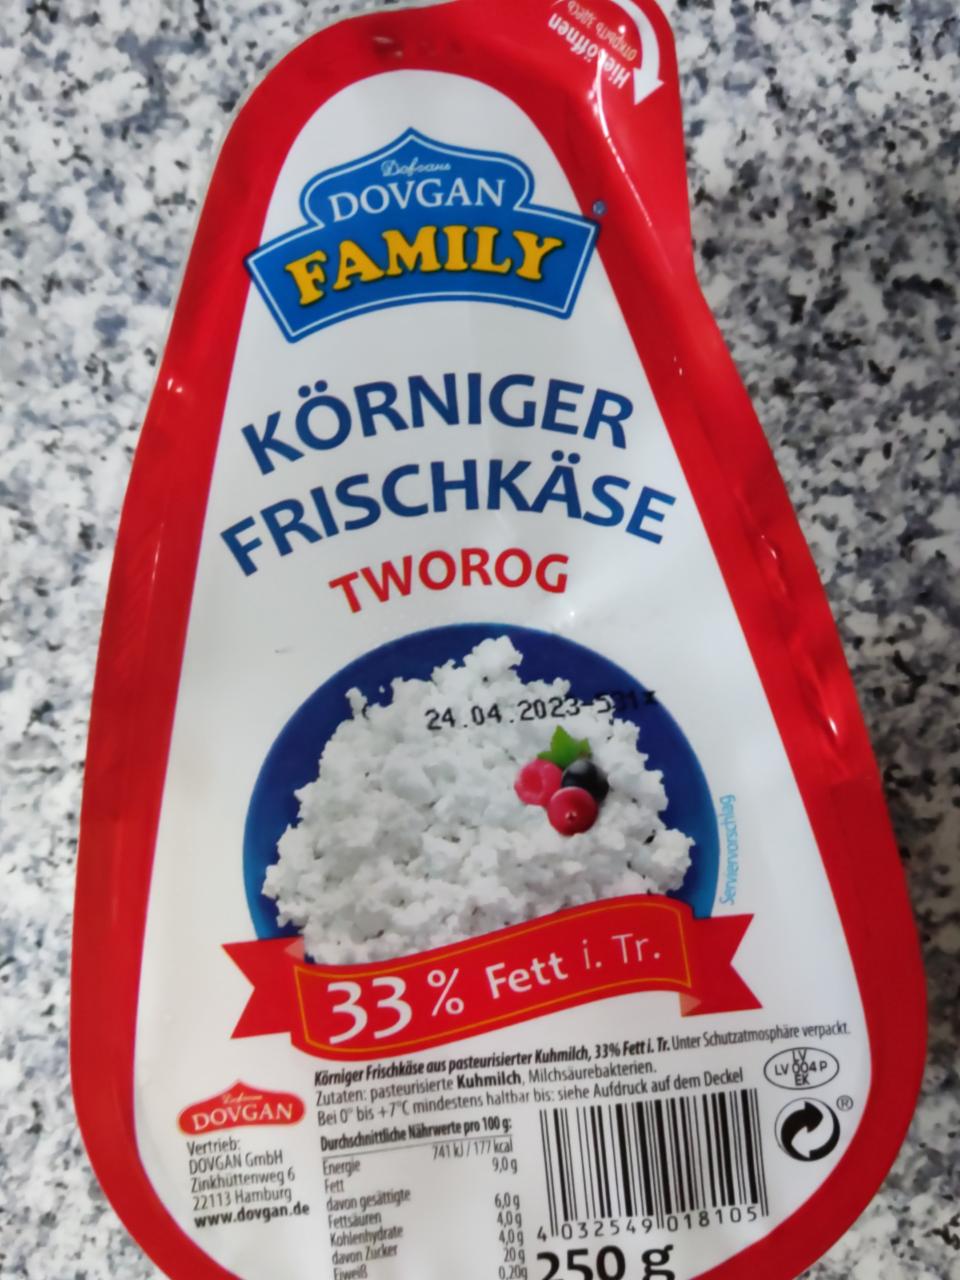 Fotografie - Körniger Frischkäse tworog 33% fett i. tr. Dovgan Family